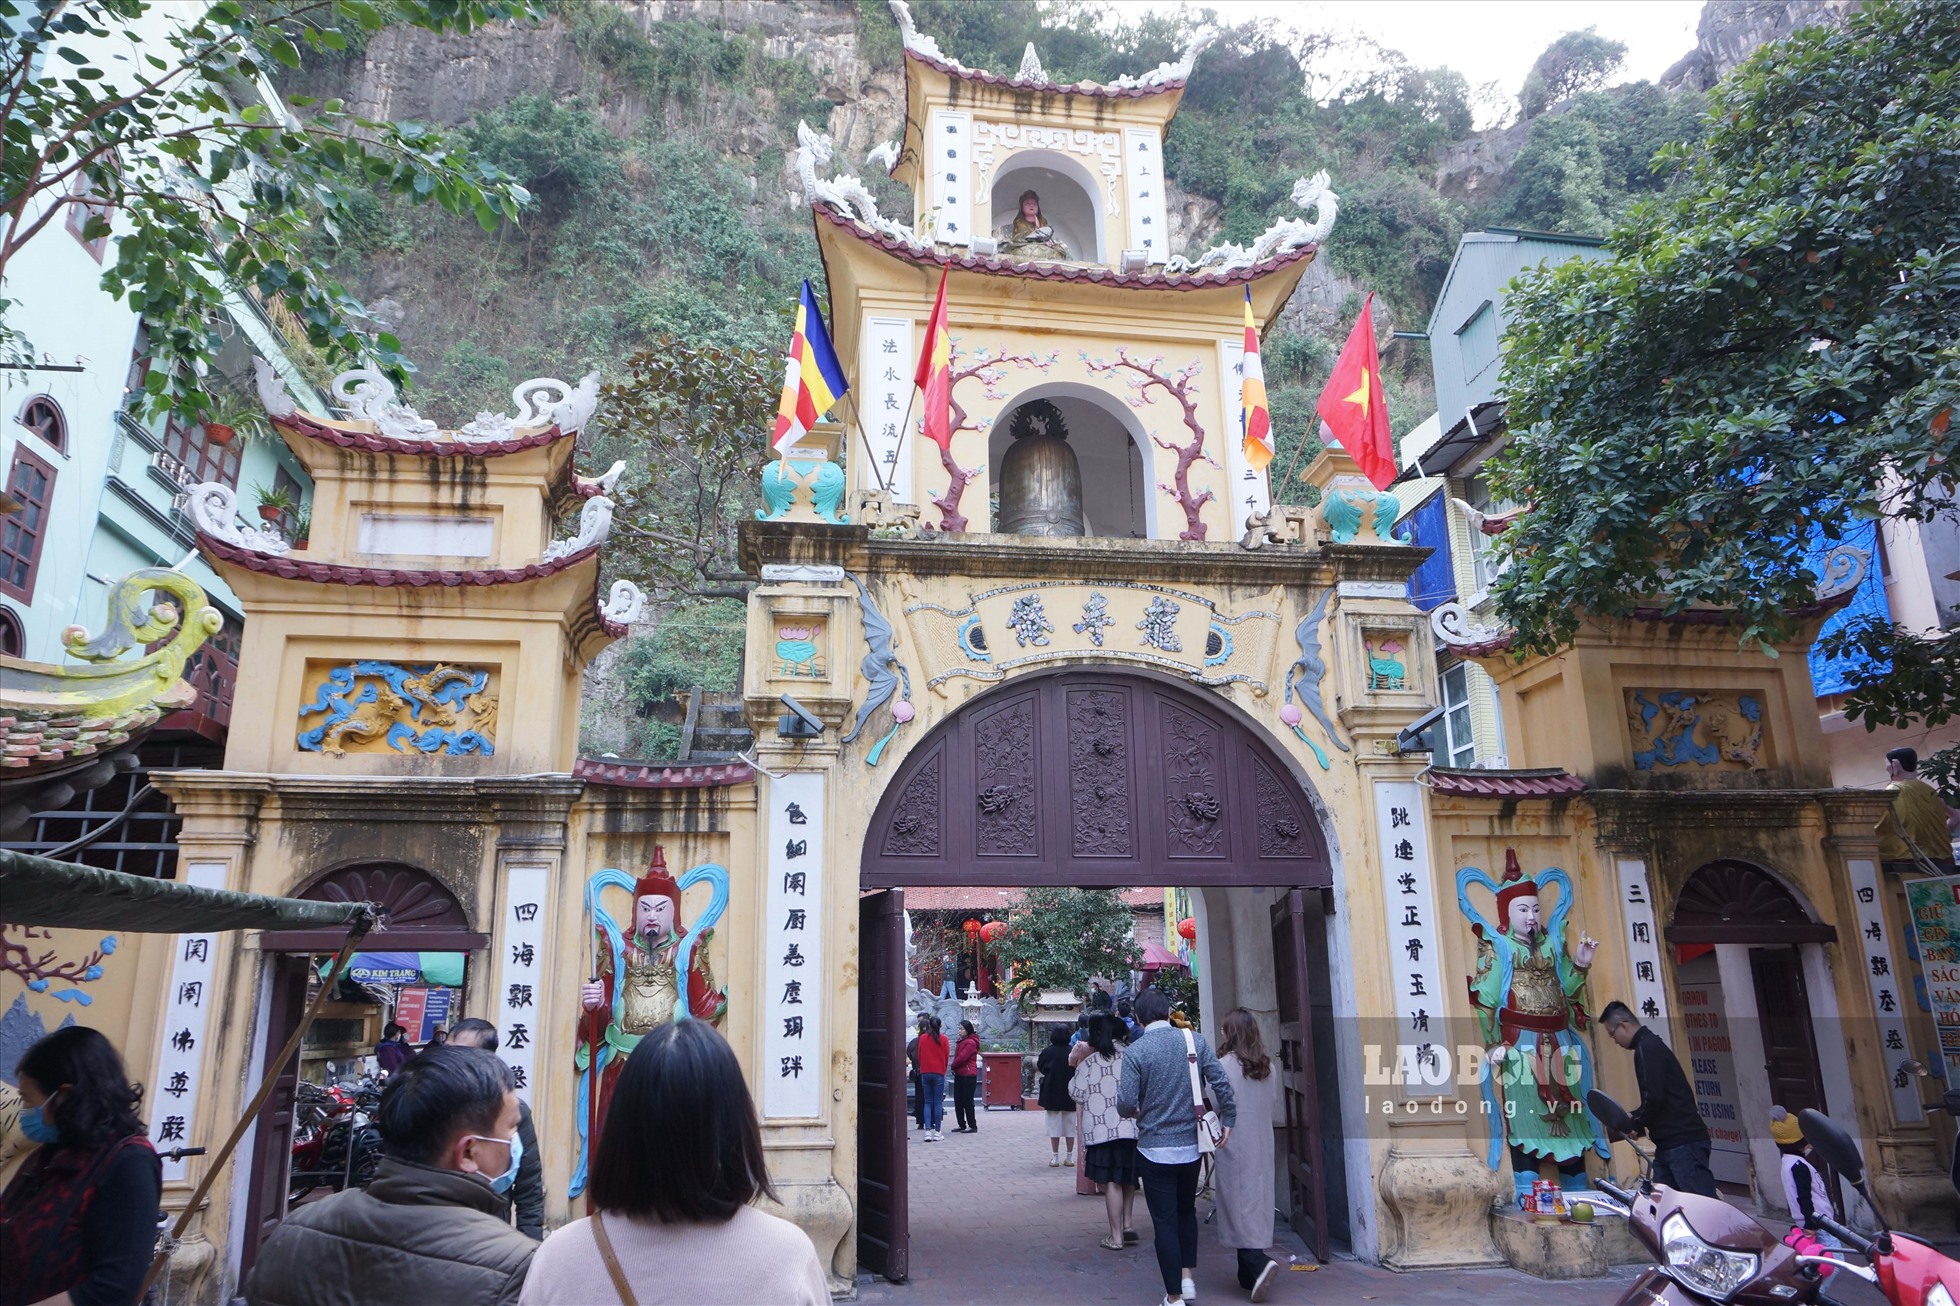 Bước vào chùa Long Tiên, du khách sẽ thấy cổng Tam Quan với 3 cửa đại diện cho Hữu - Vô - Đại. Trong đó cánh cổng lớn nhất sẽ dành cho những người theo đạo Phật vào cúng bái, còn hai bên cổng nhỏ hơn sẽ dành cho du khách vãng lai vào tham quan. Ảnh: Đoàn Hưng